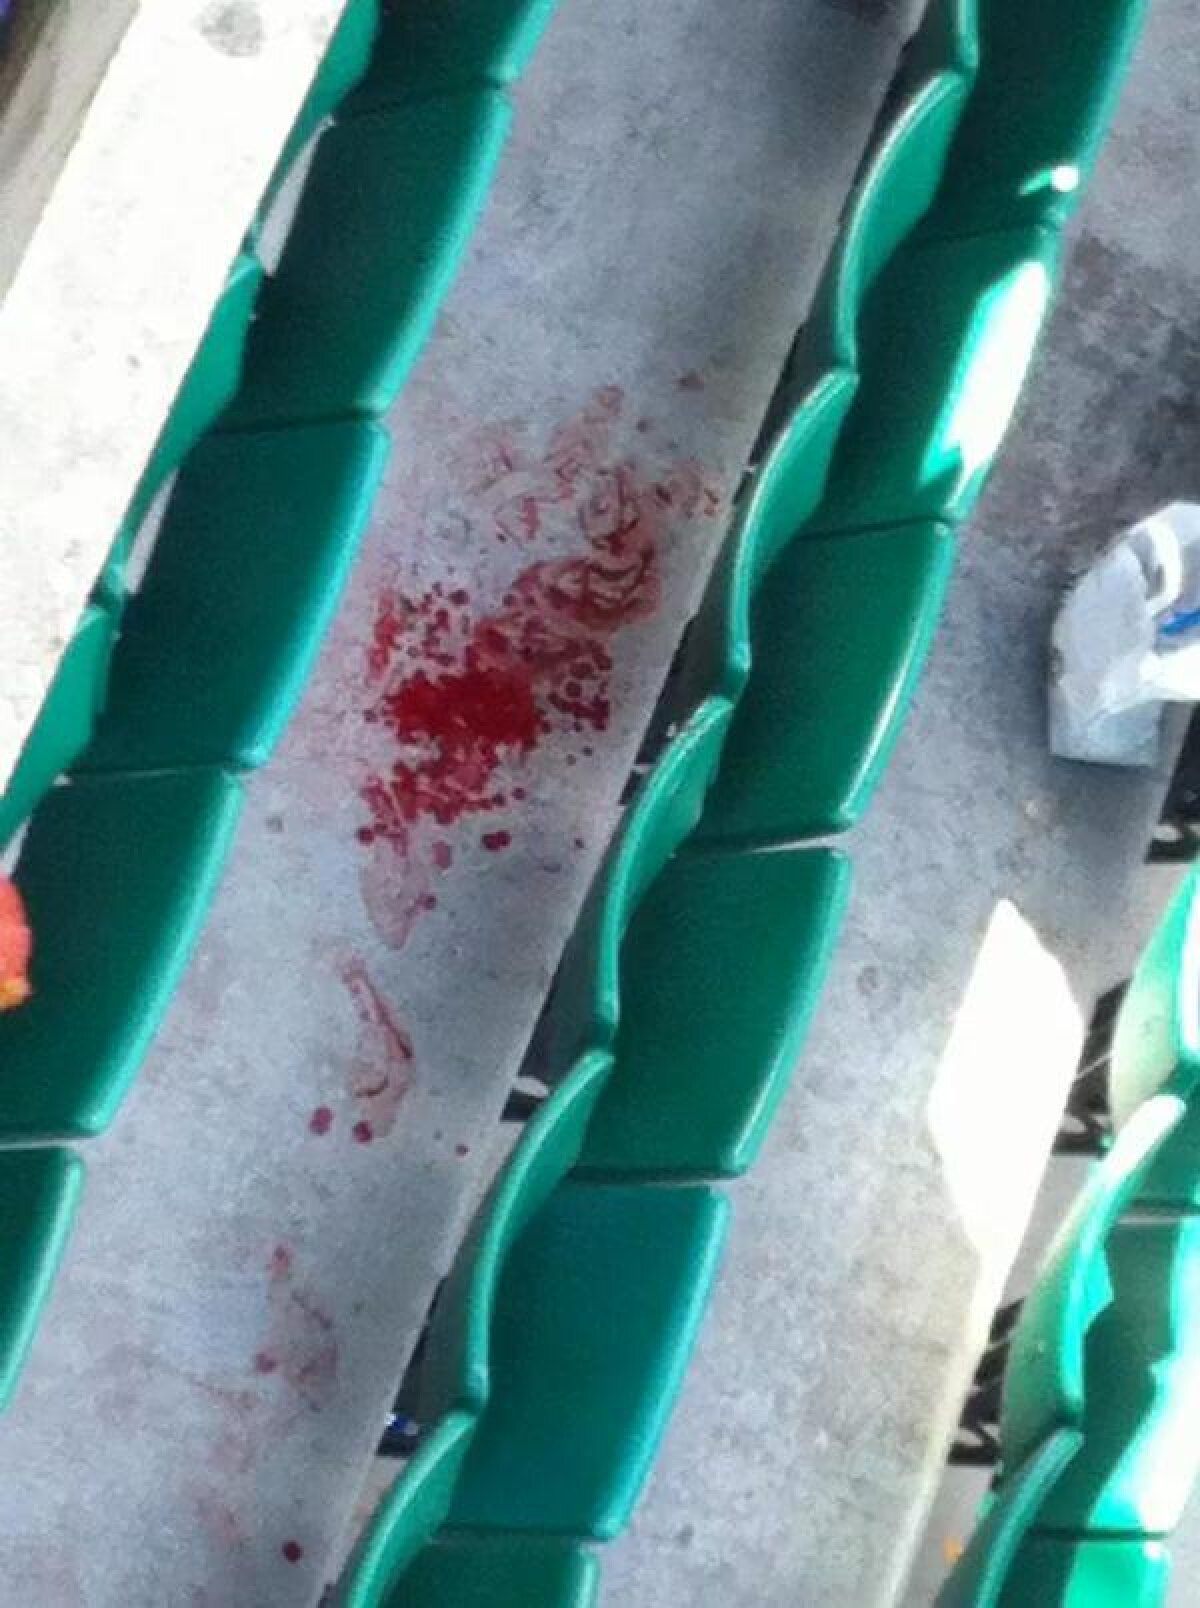 VIDEO Moment terifiant la Roland Garros » O bucată din arenă a căzut peste spectatori!